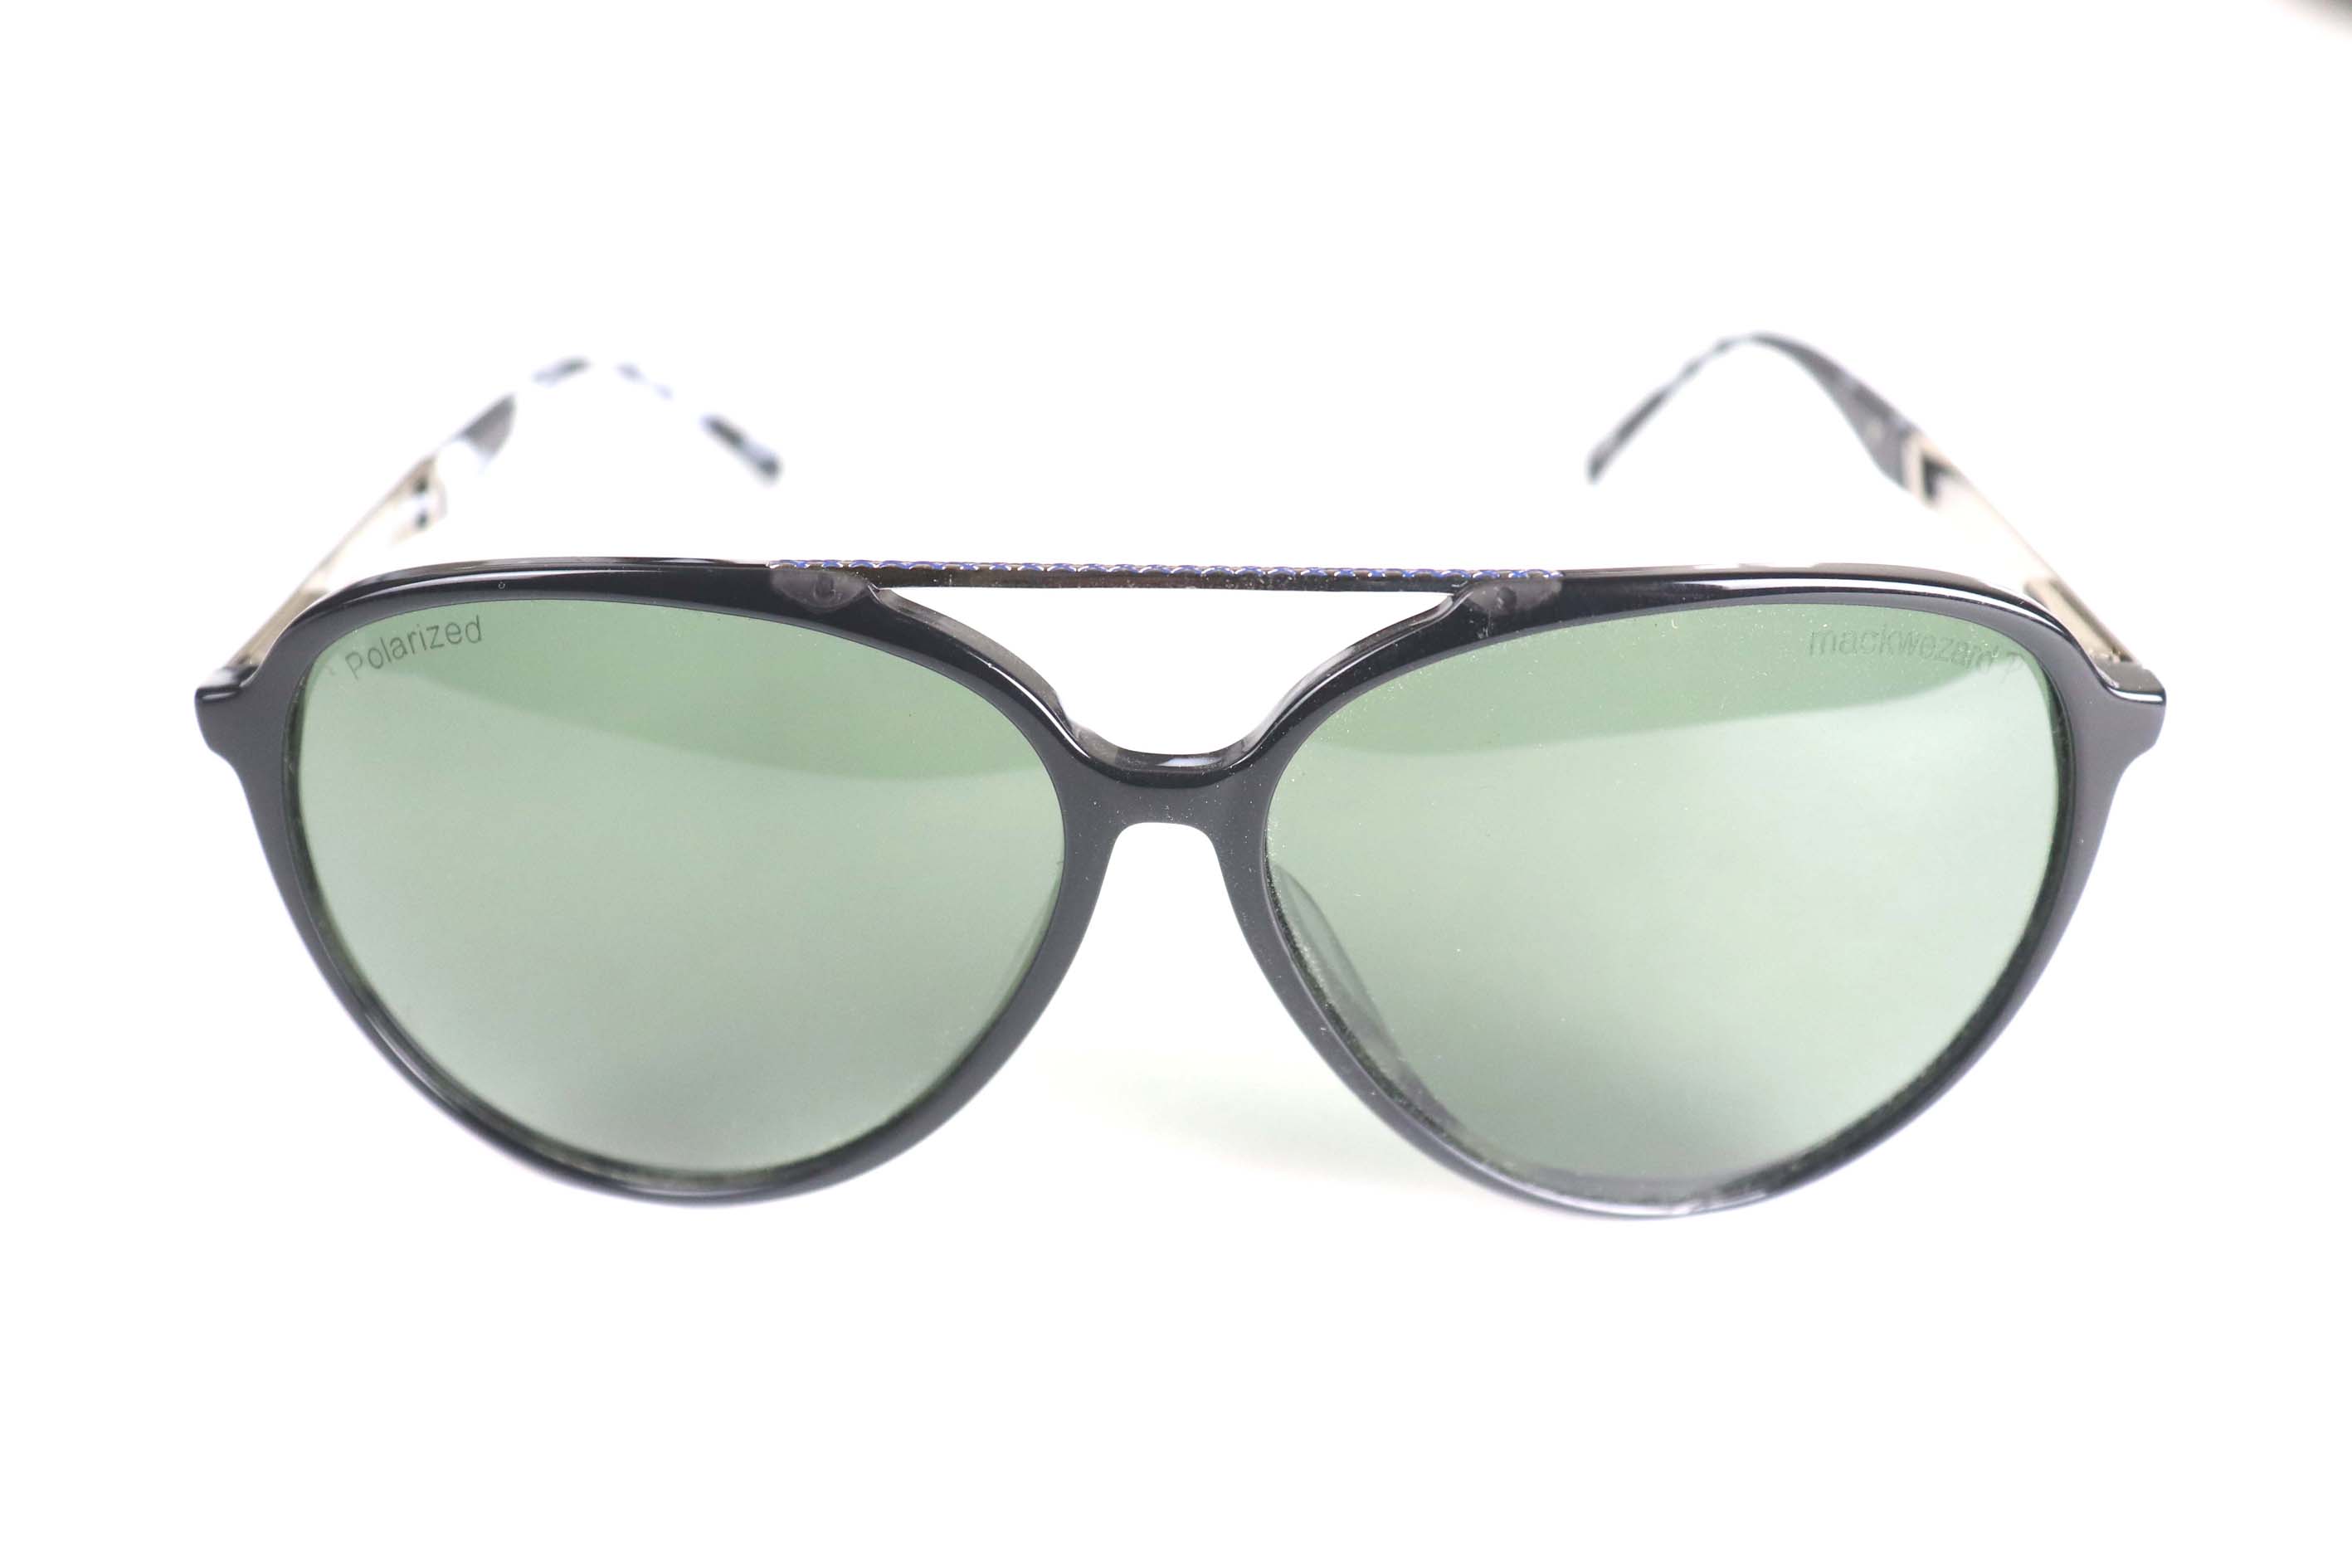 Mackwezard Sunglasses-1902006-c3-61-13-140